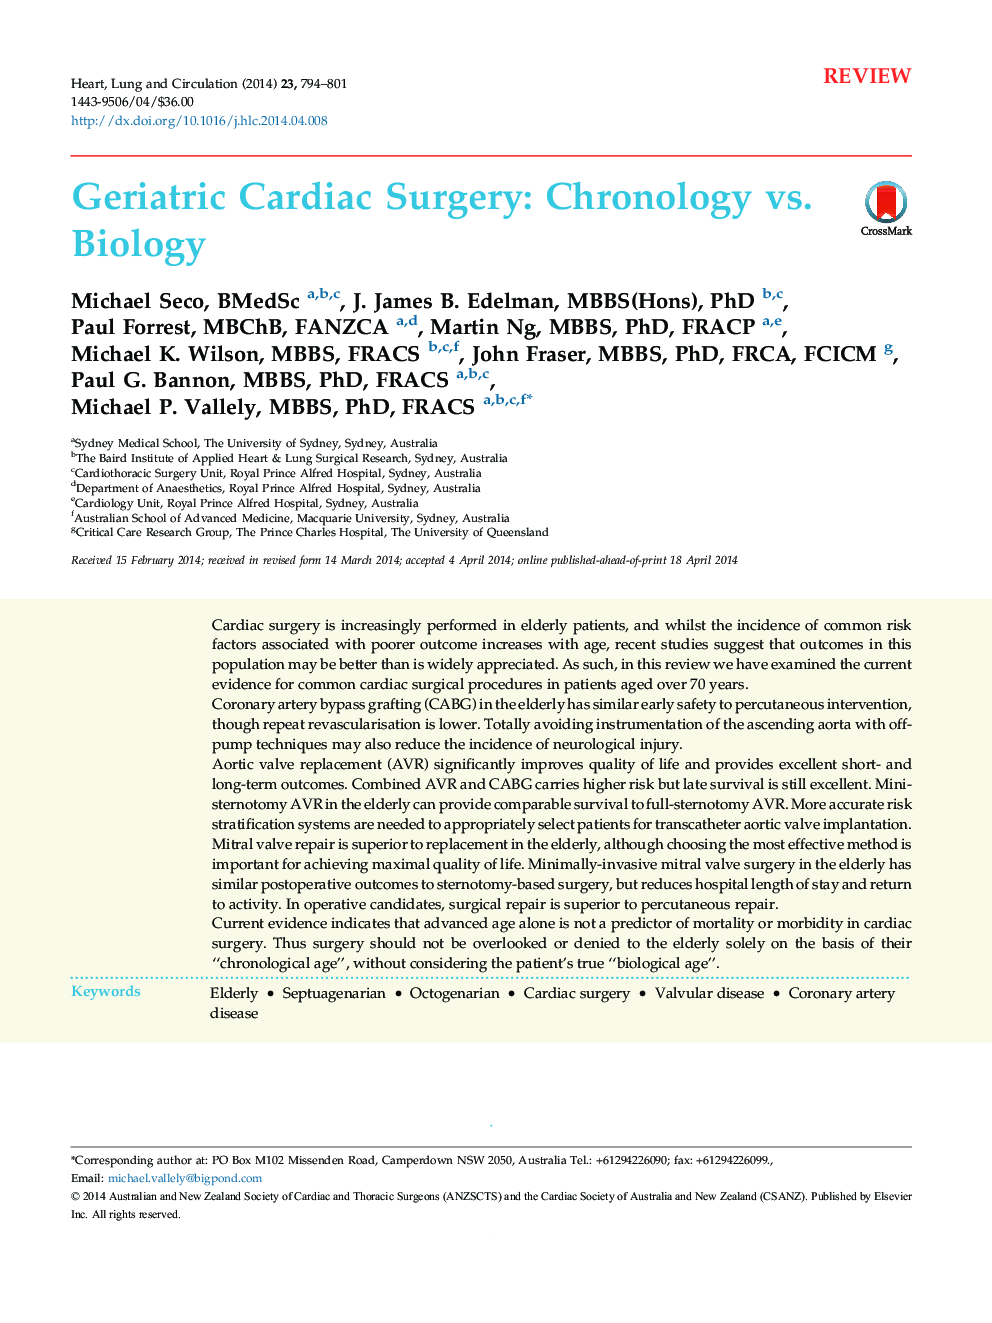 Geriatric Cardiac Surgery: Chronology vs. Biology